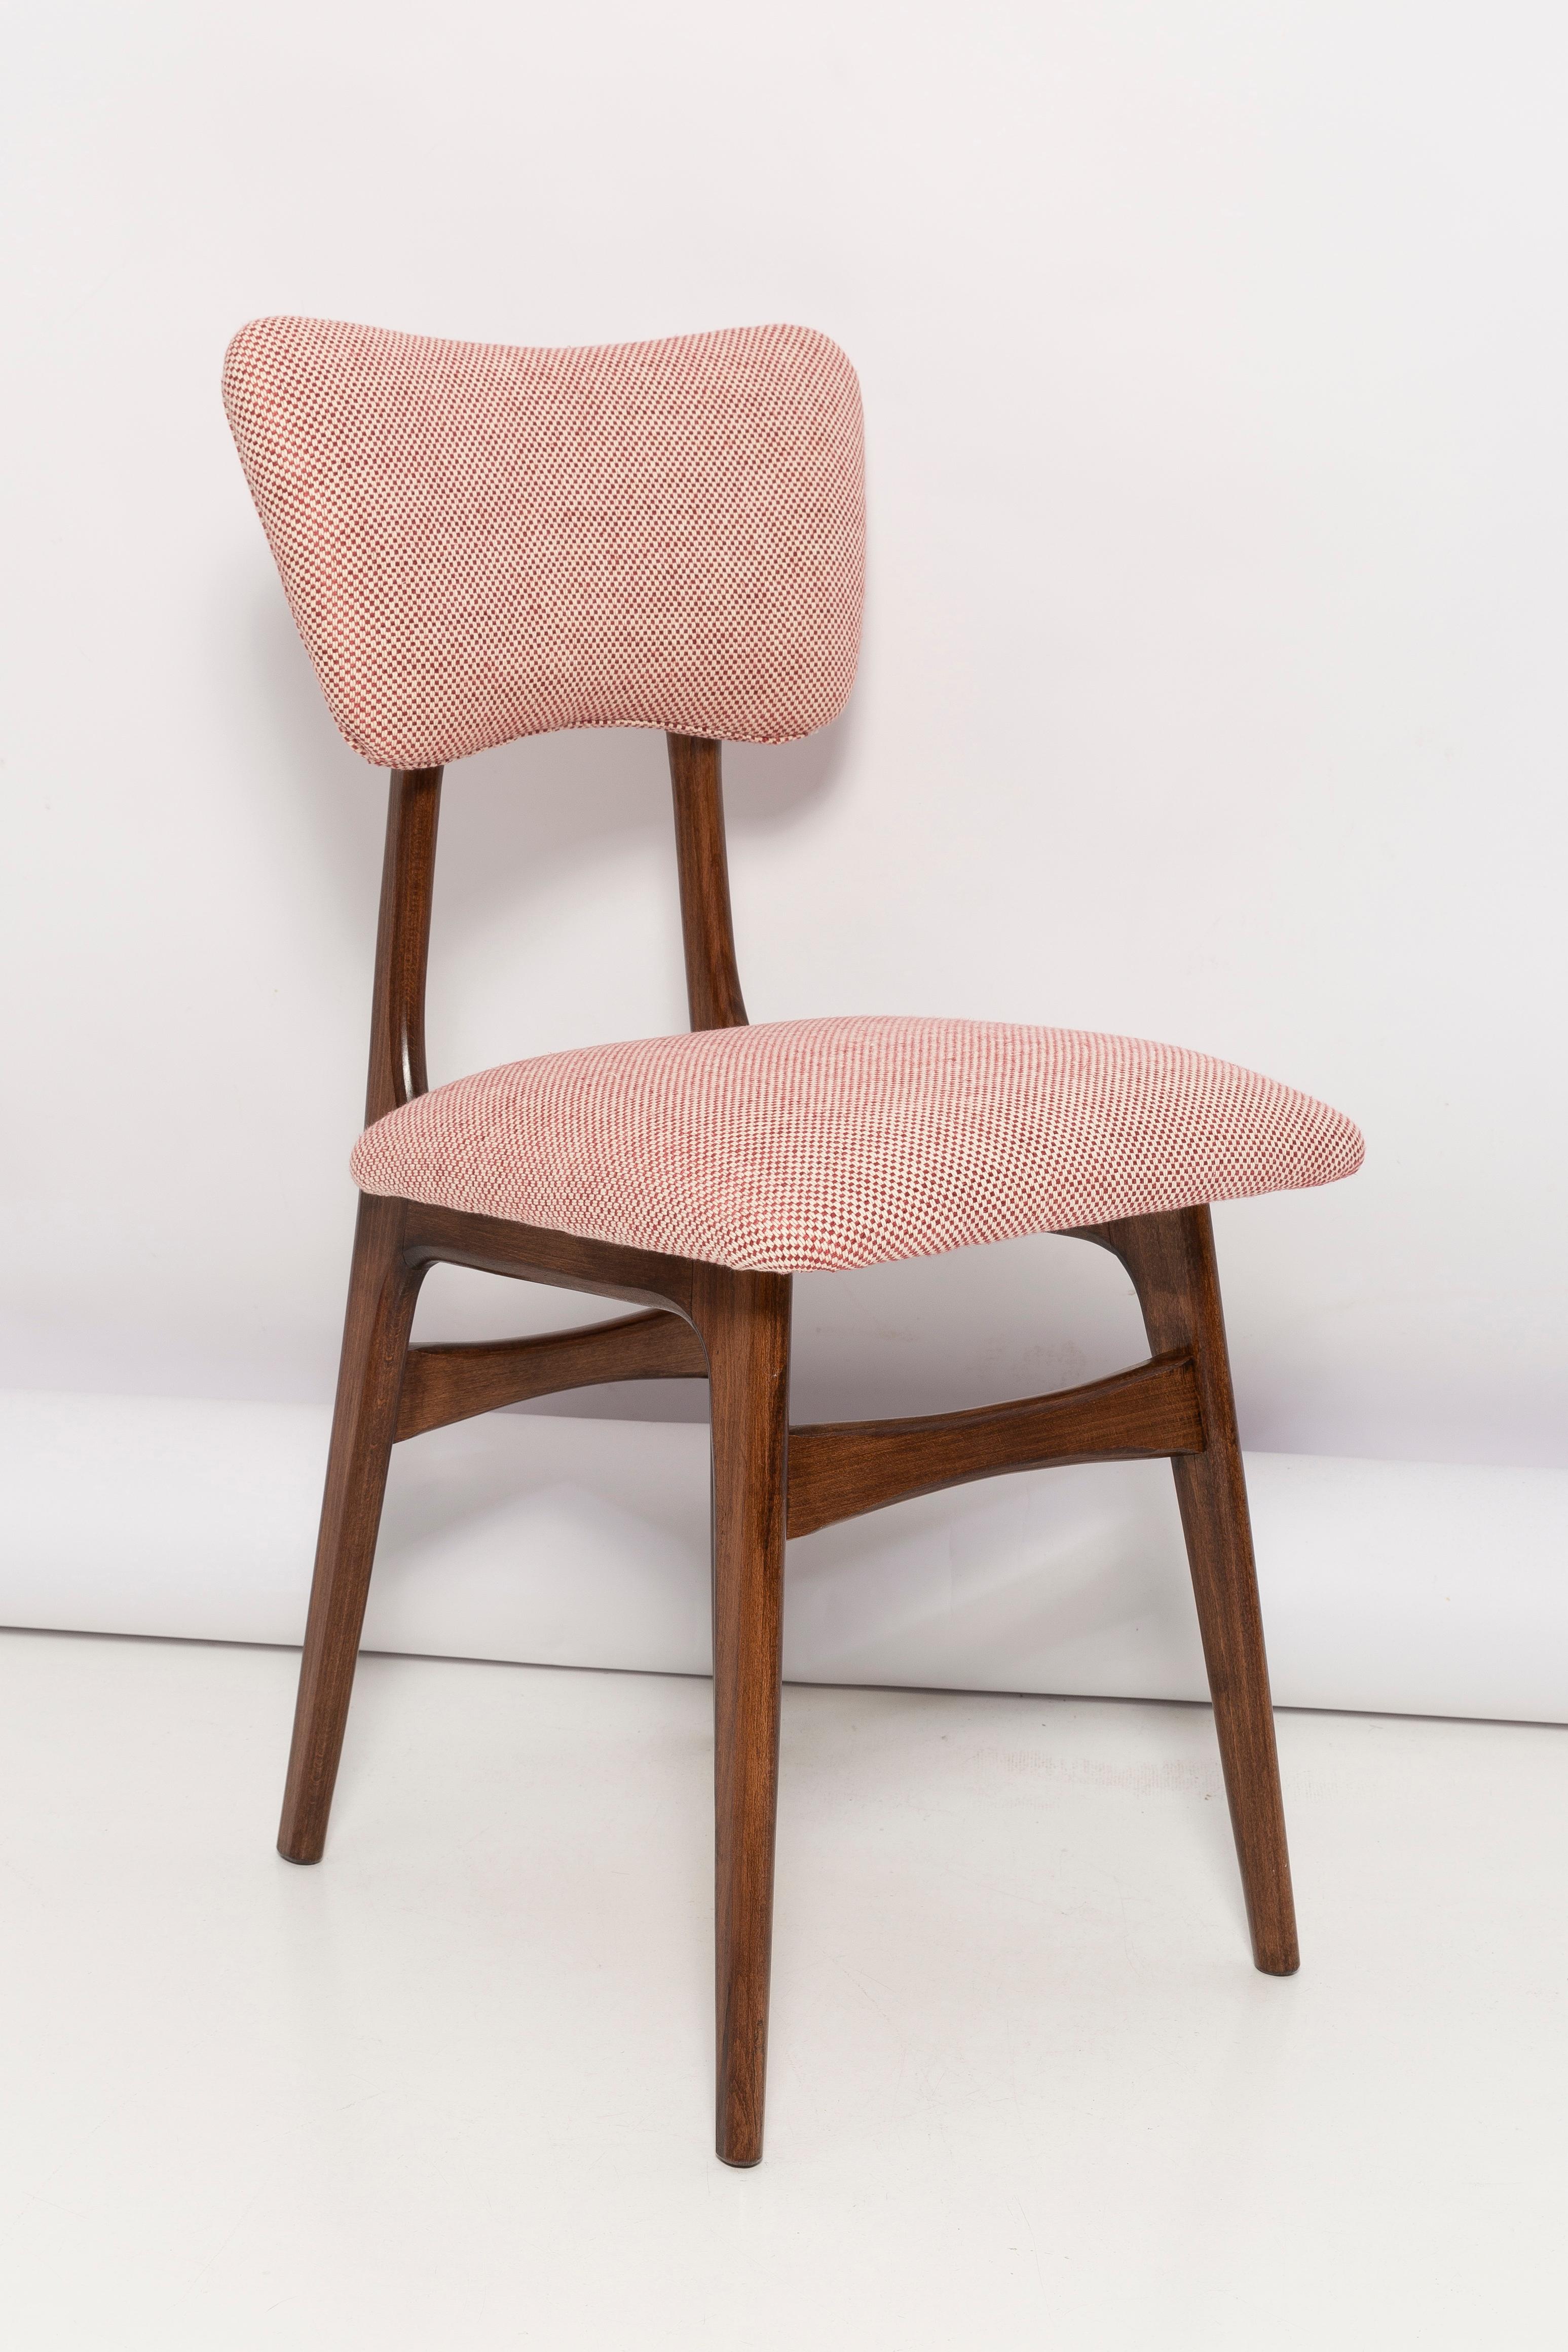 Chaise de salle à manger appelée « Butterfly » avec pieds en hêtre teinté moyen et assise et dossier entièrement tapissés dans un magnifique tissu Ian Mankin (70% coton, 20% viscose, 10 % lin). 

Cette chaise peut être personnalisée selon vos